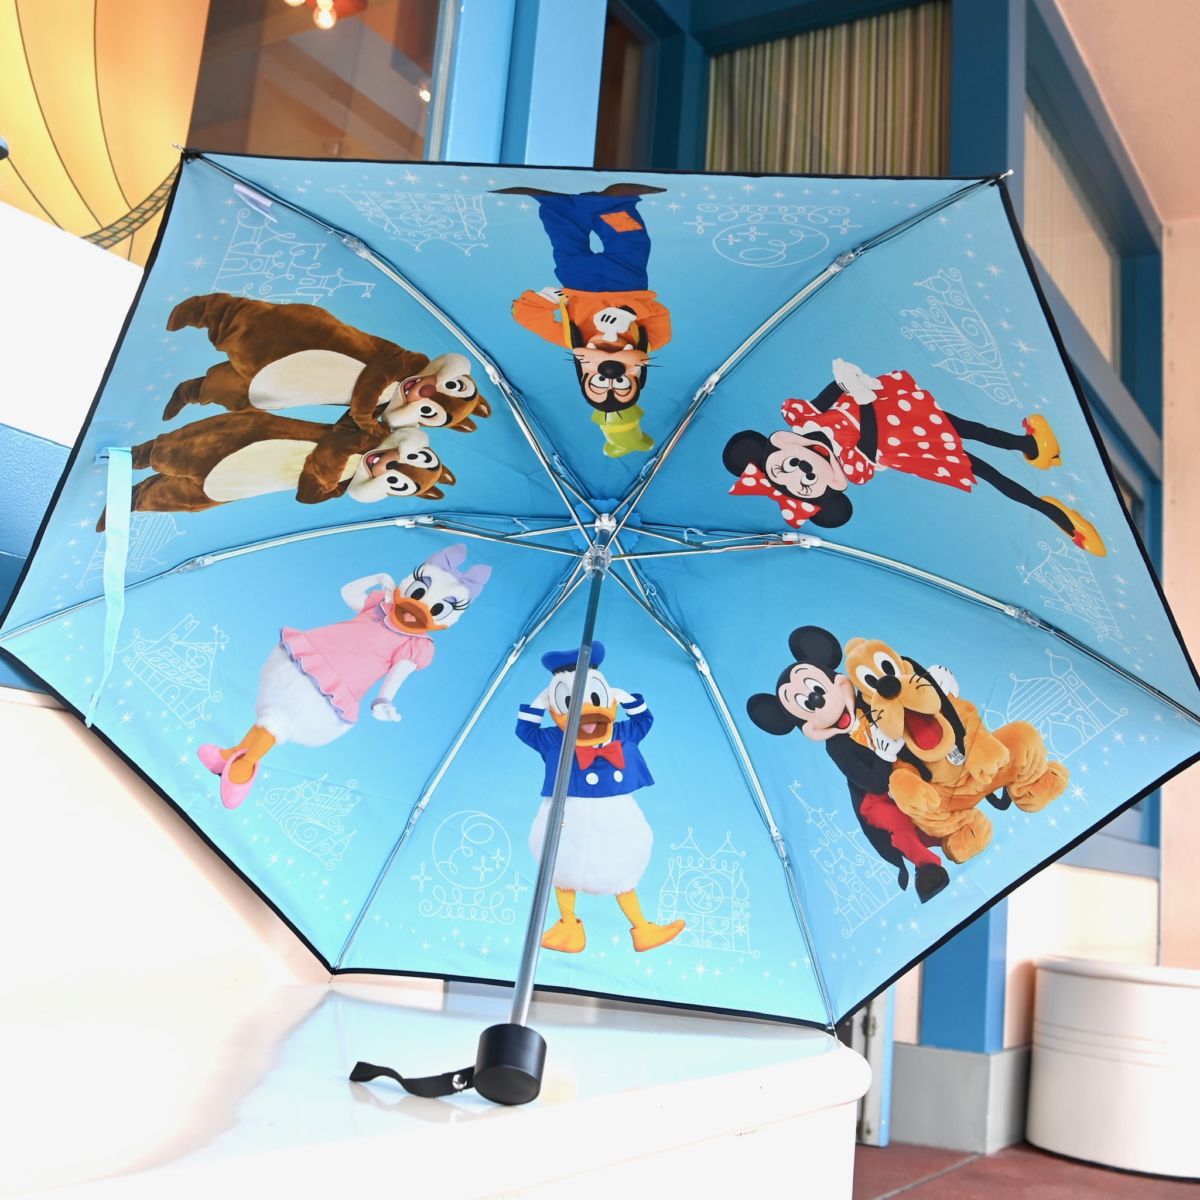 東京ディズニーランド「ミッキー&フレンズ」折りたたみ傘